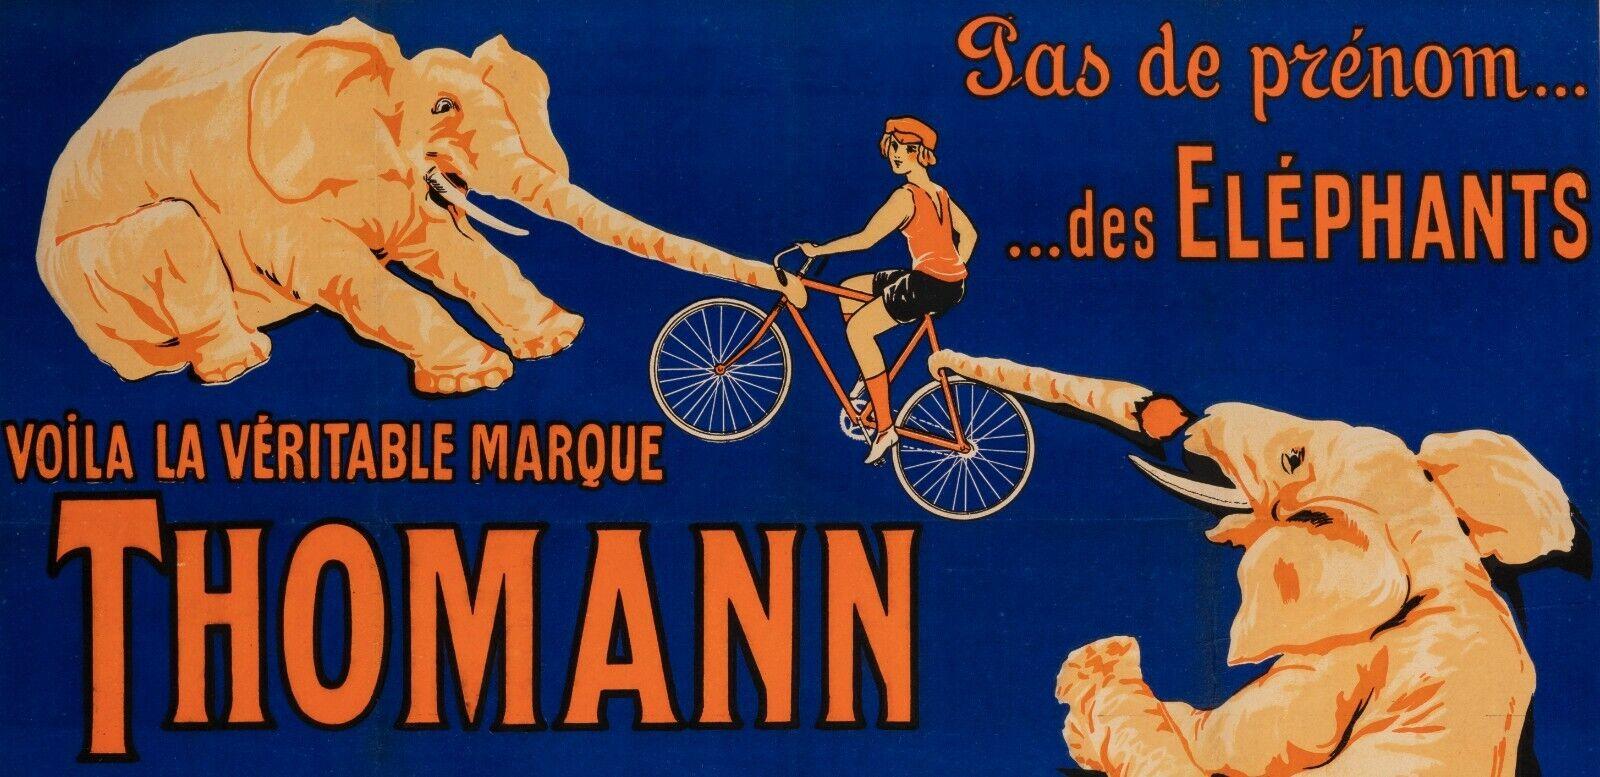 Original Vintage Poster-Räder Motos Thomann-Elephant-Fahrrad, 1926

Werbeplakat für die Fahrräder und Motorräder der Marke Thomann, die 1908 von Alphonse Thomann geschaffen wurde.
 Das Plakat spezifiziert Thomann 